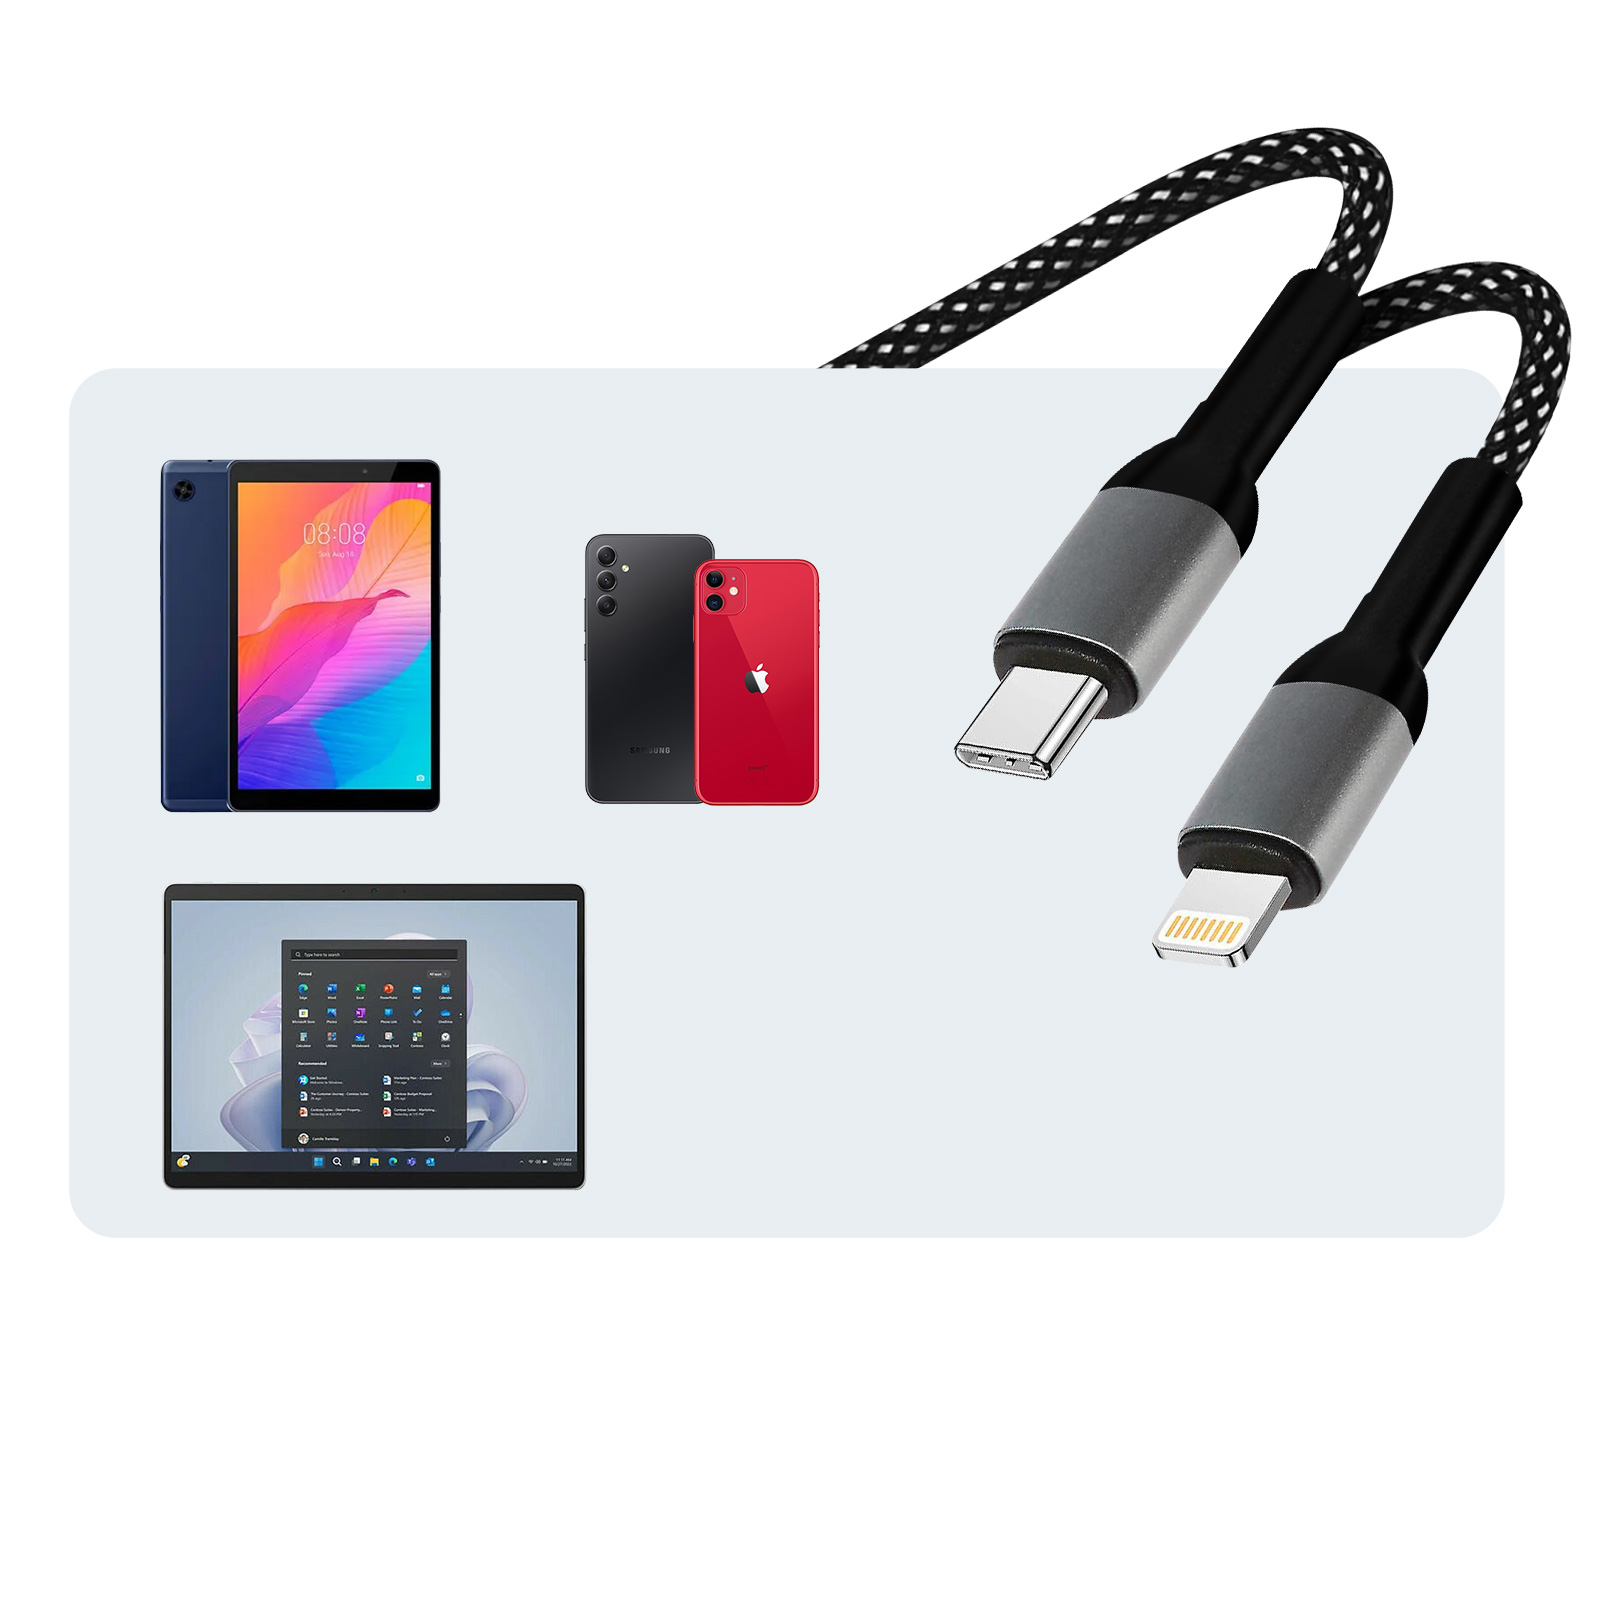 Adaptador Lightning a USB Ipad > Smartphones > Tablets > Accesorios Tablets  > Accesorios iPad Mini